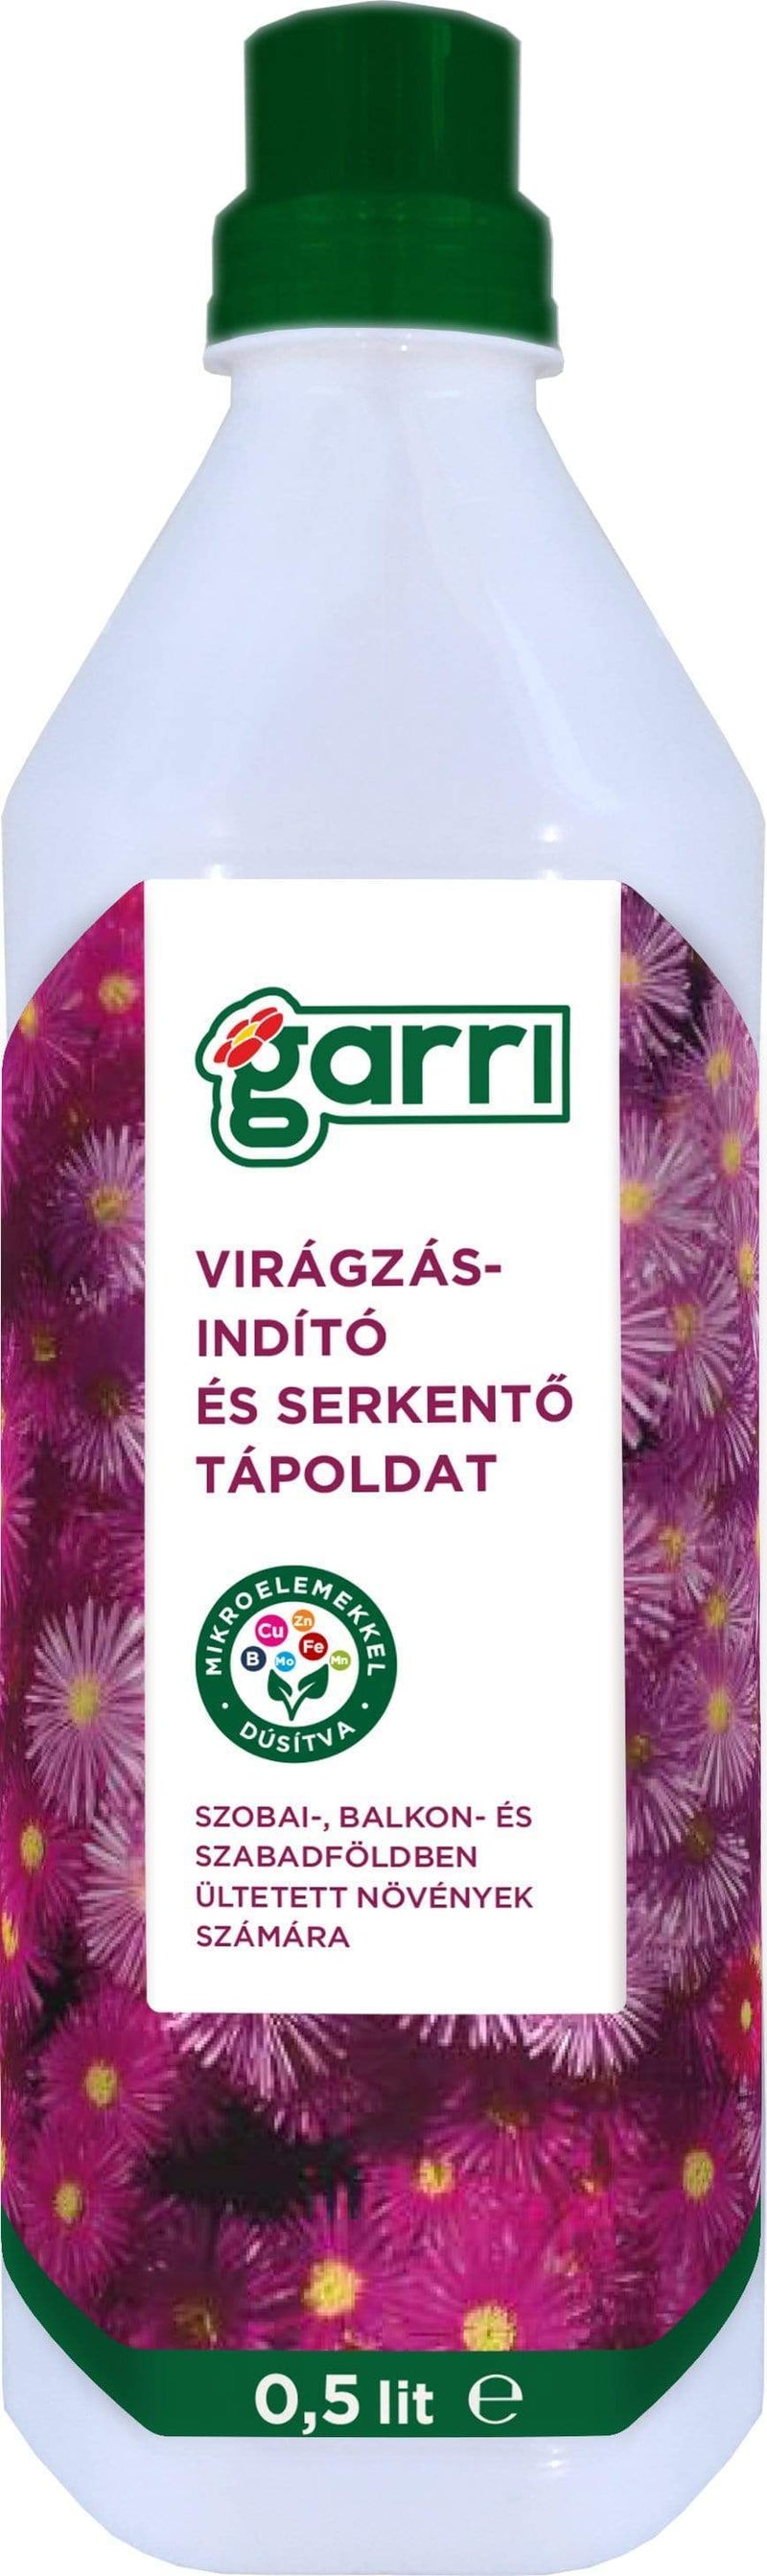 Gardinohu Ápolás_és_gondozás 0,5l Garri Tápoldat Virágzásindító